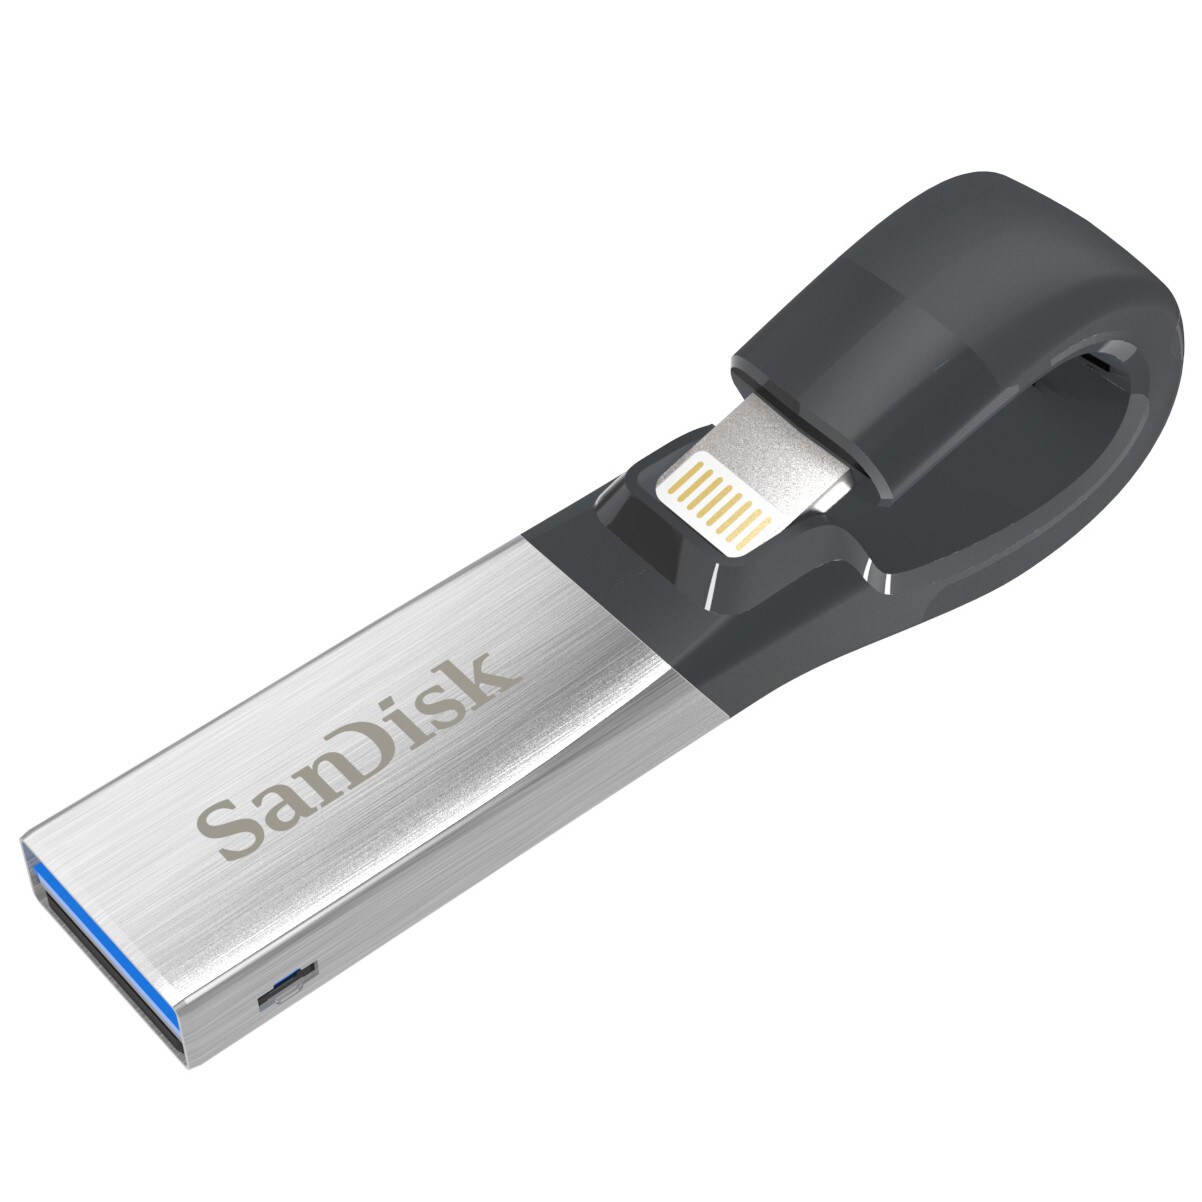 Markeret beundre Bliv oppe SanDisk iXpand 2 lagringsenhed til iPad/iPhone - 16 GB | Elgiganten